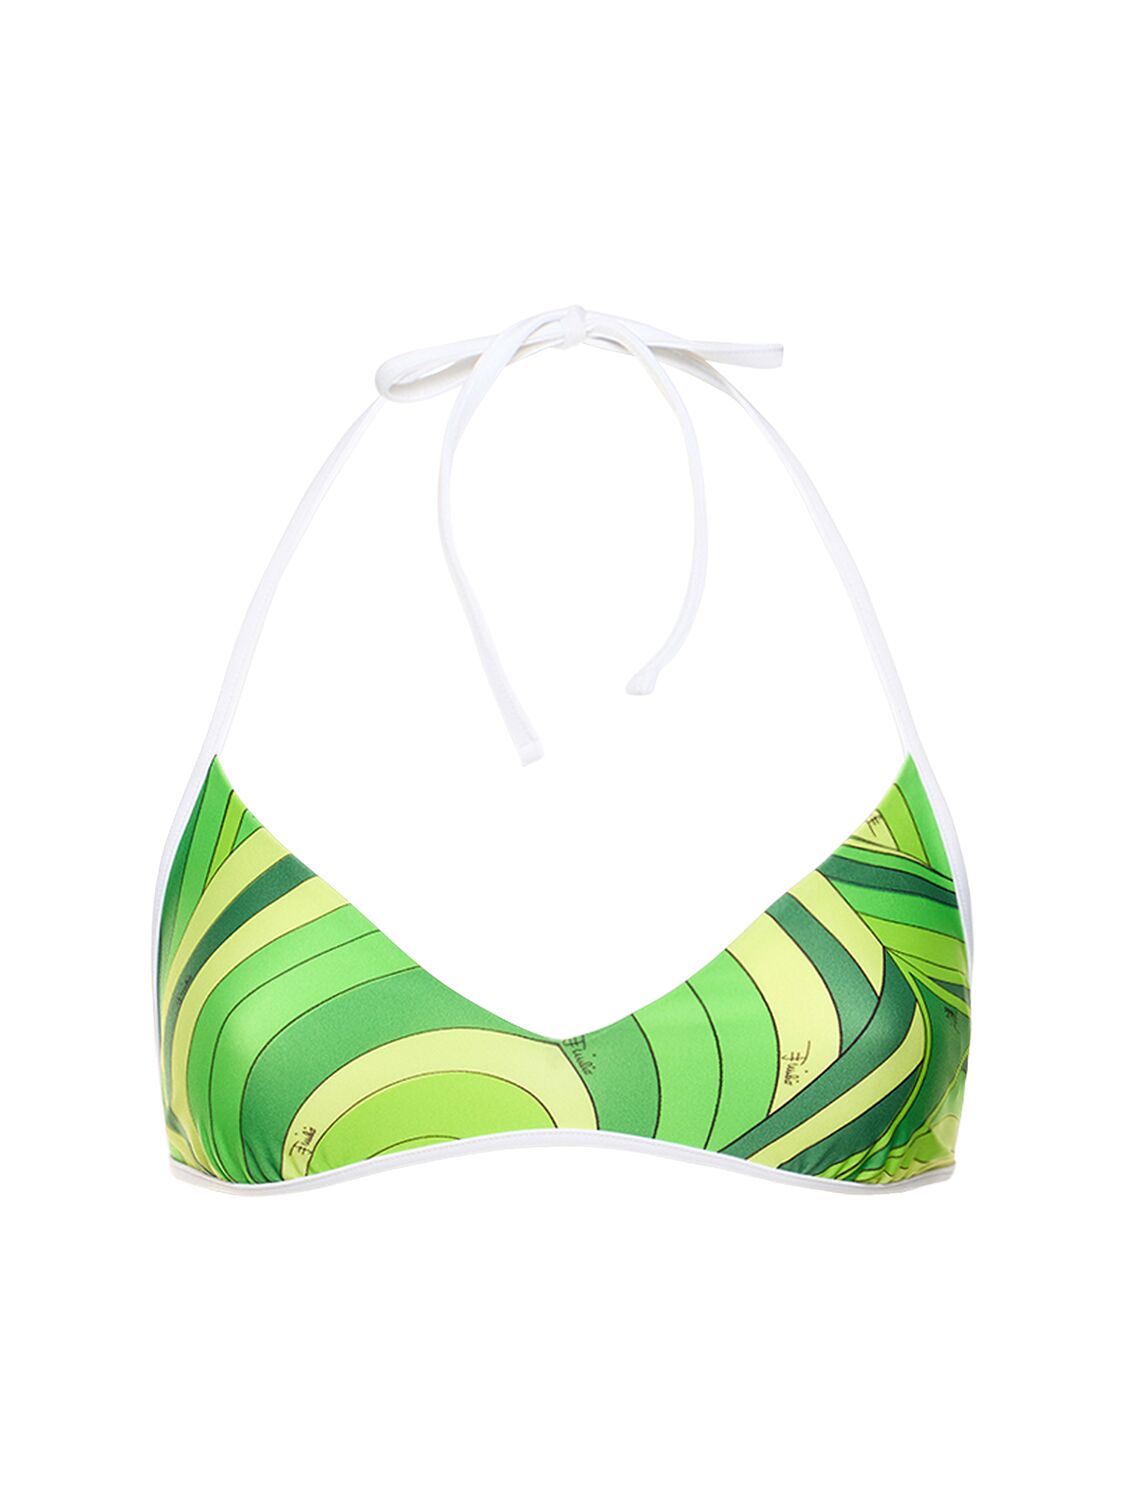 Pucci Iride Printed Lycra Triangle Bikini Top In Green